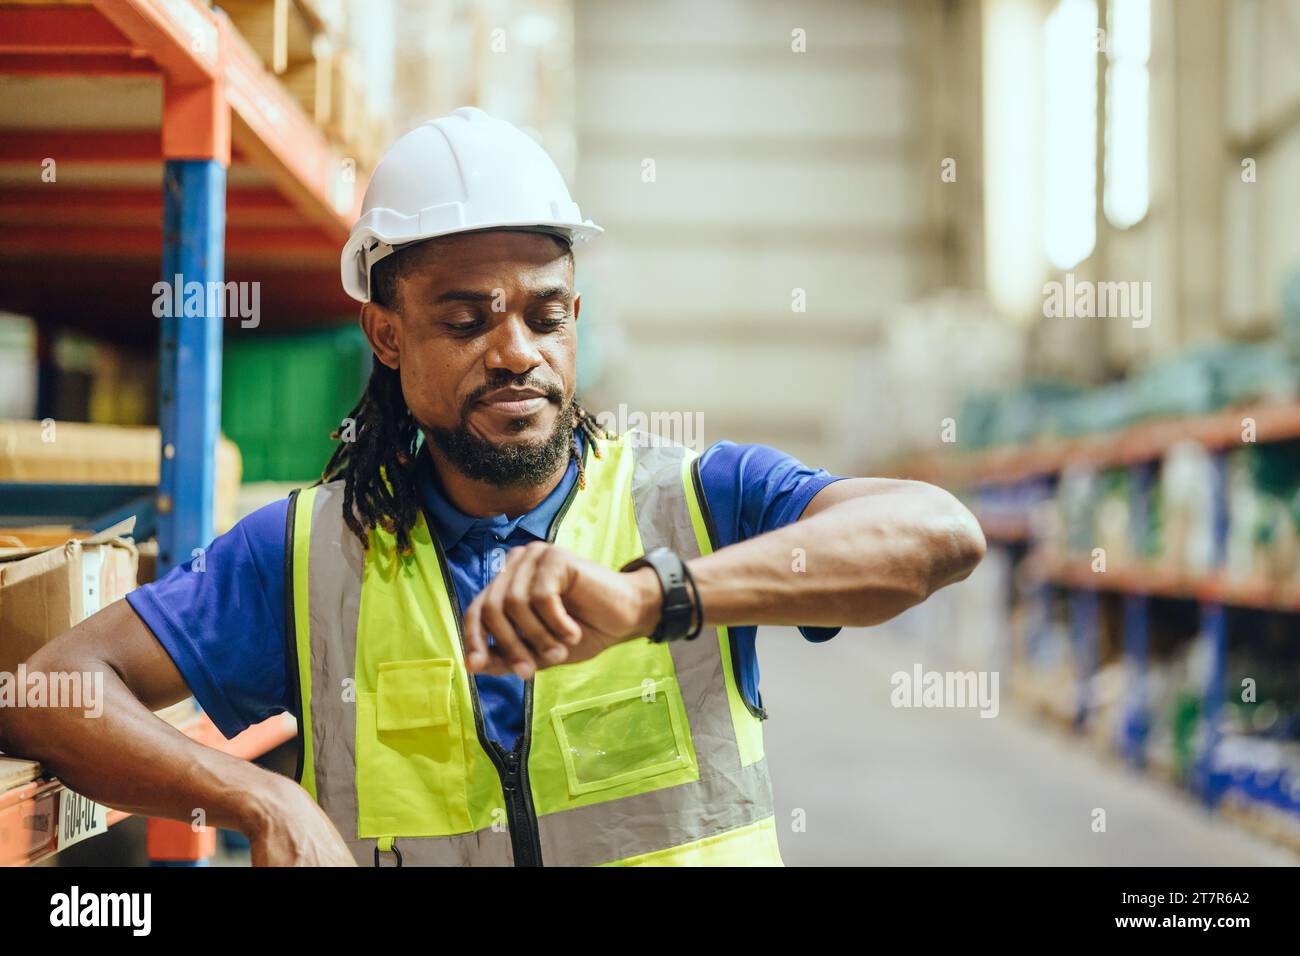 Travailleur masculin de l'ingénieur des personnes noires africaines regardant la montre-bracelet vérifier l'heure. Heures de travail de l'usine de l'industrie heures de pause après-midi pour le déjeuner Banque D'Images